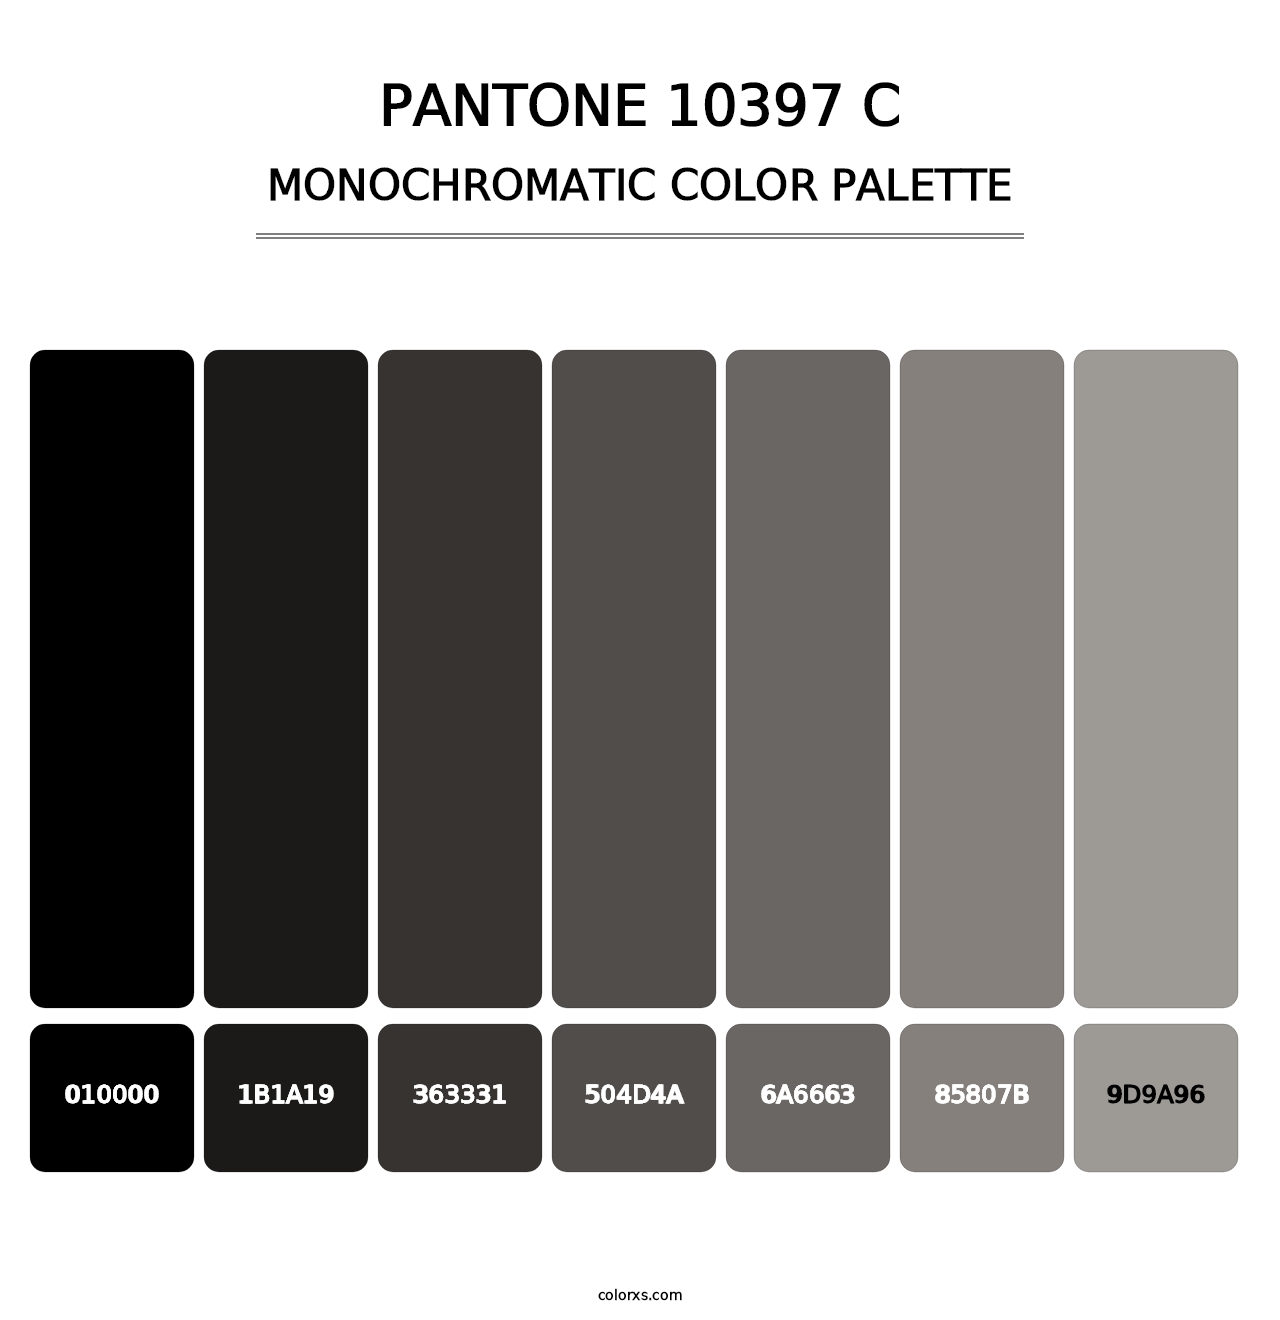 PANTONE 10397 C - Monochromatic Color Palette